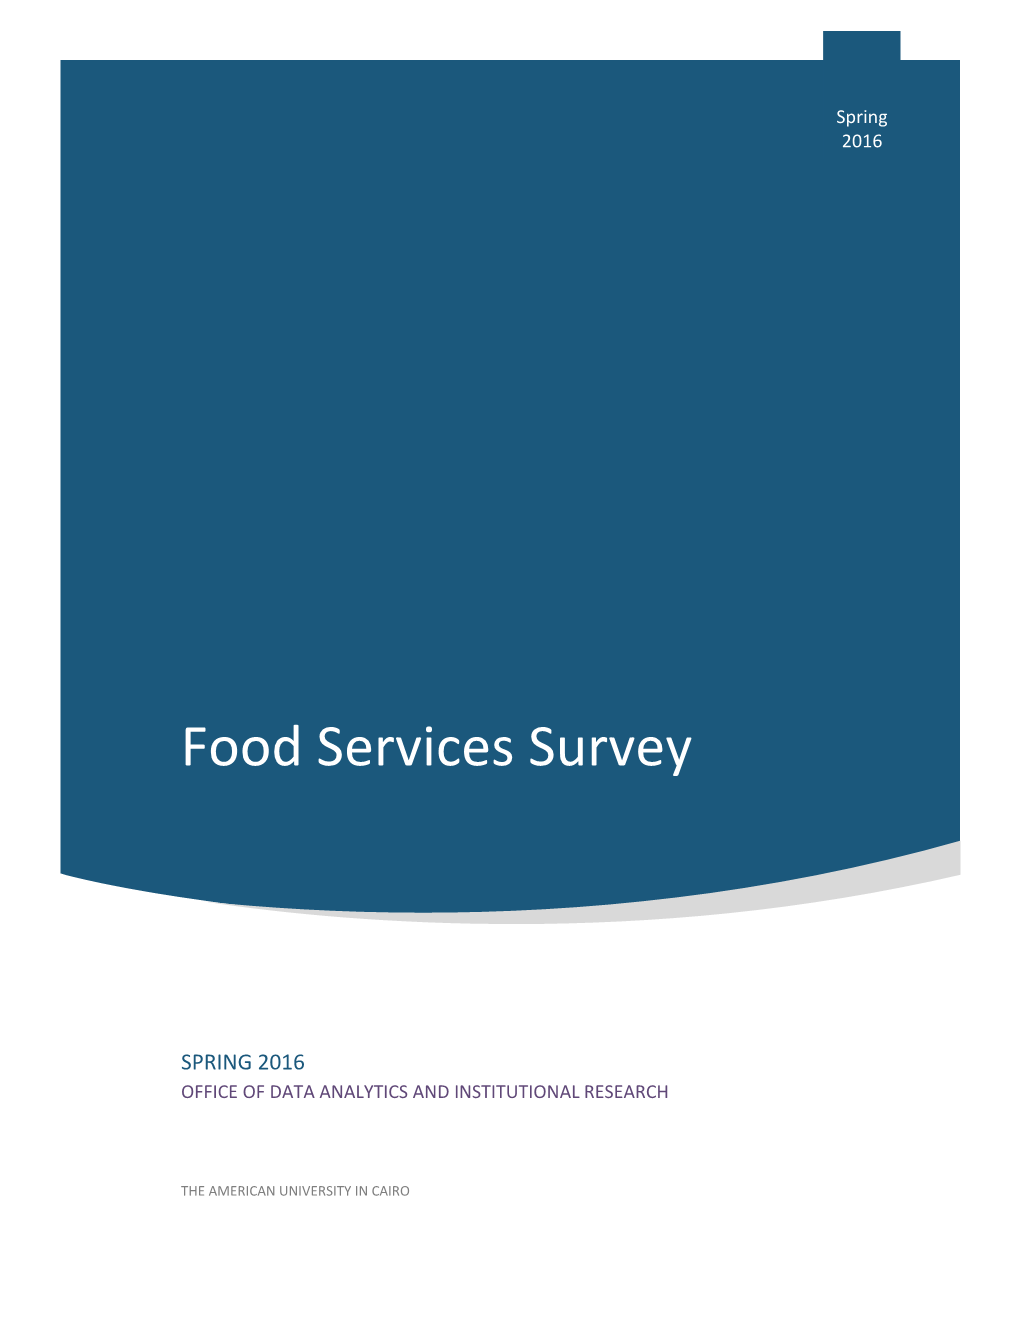 Food Services Survey